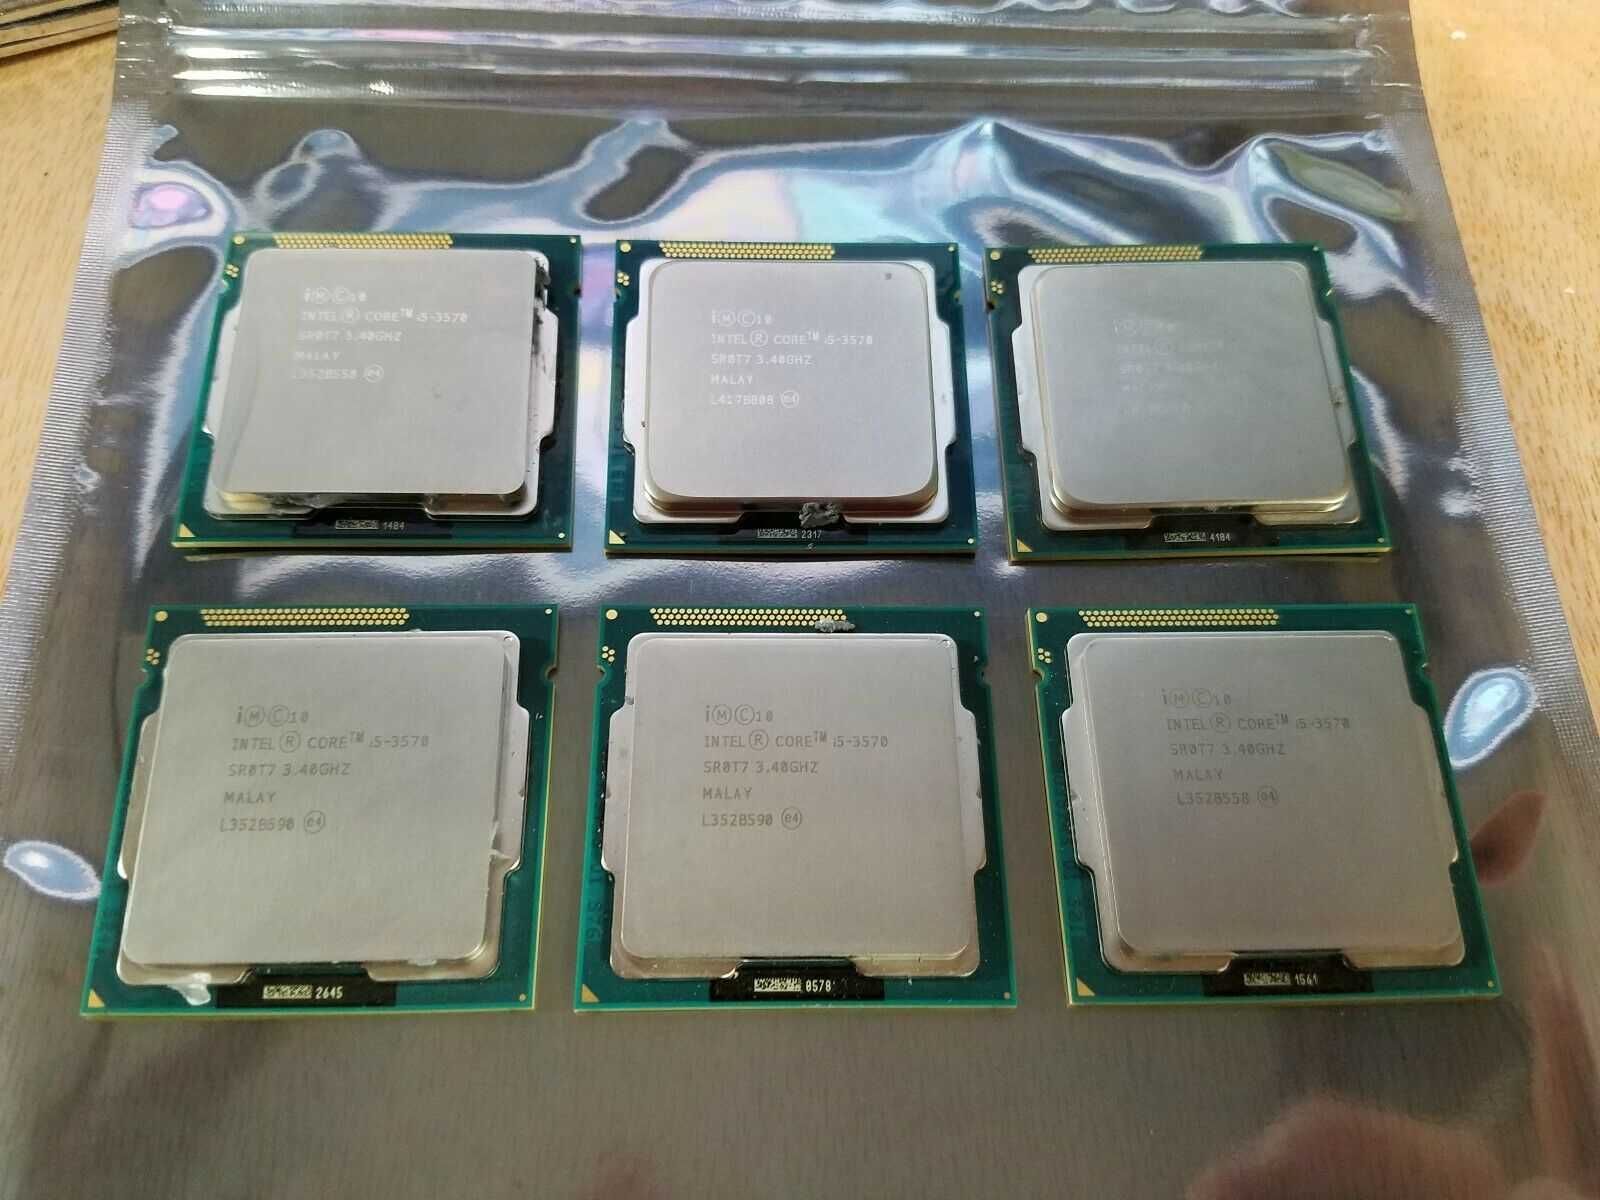 Intel Xeon E3-1220 1225 Core i5-2400, 3470, 3570 s1155